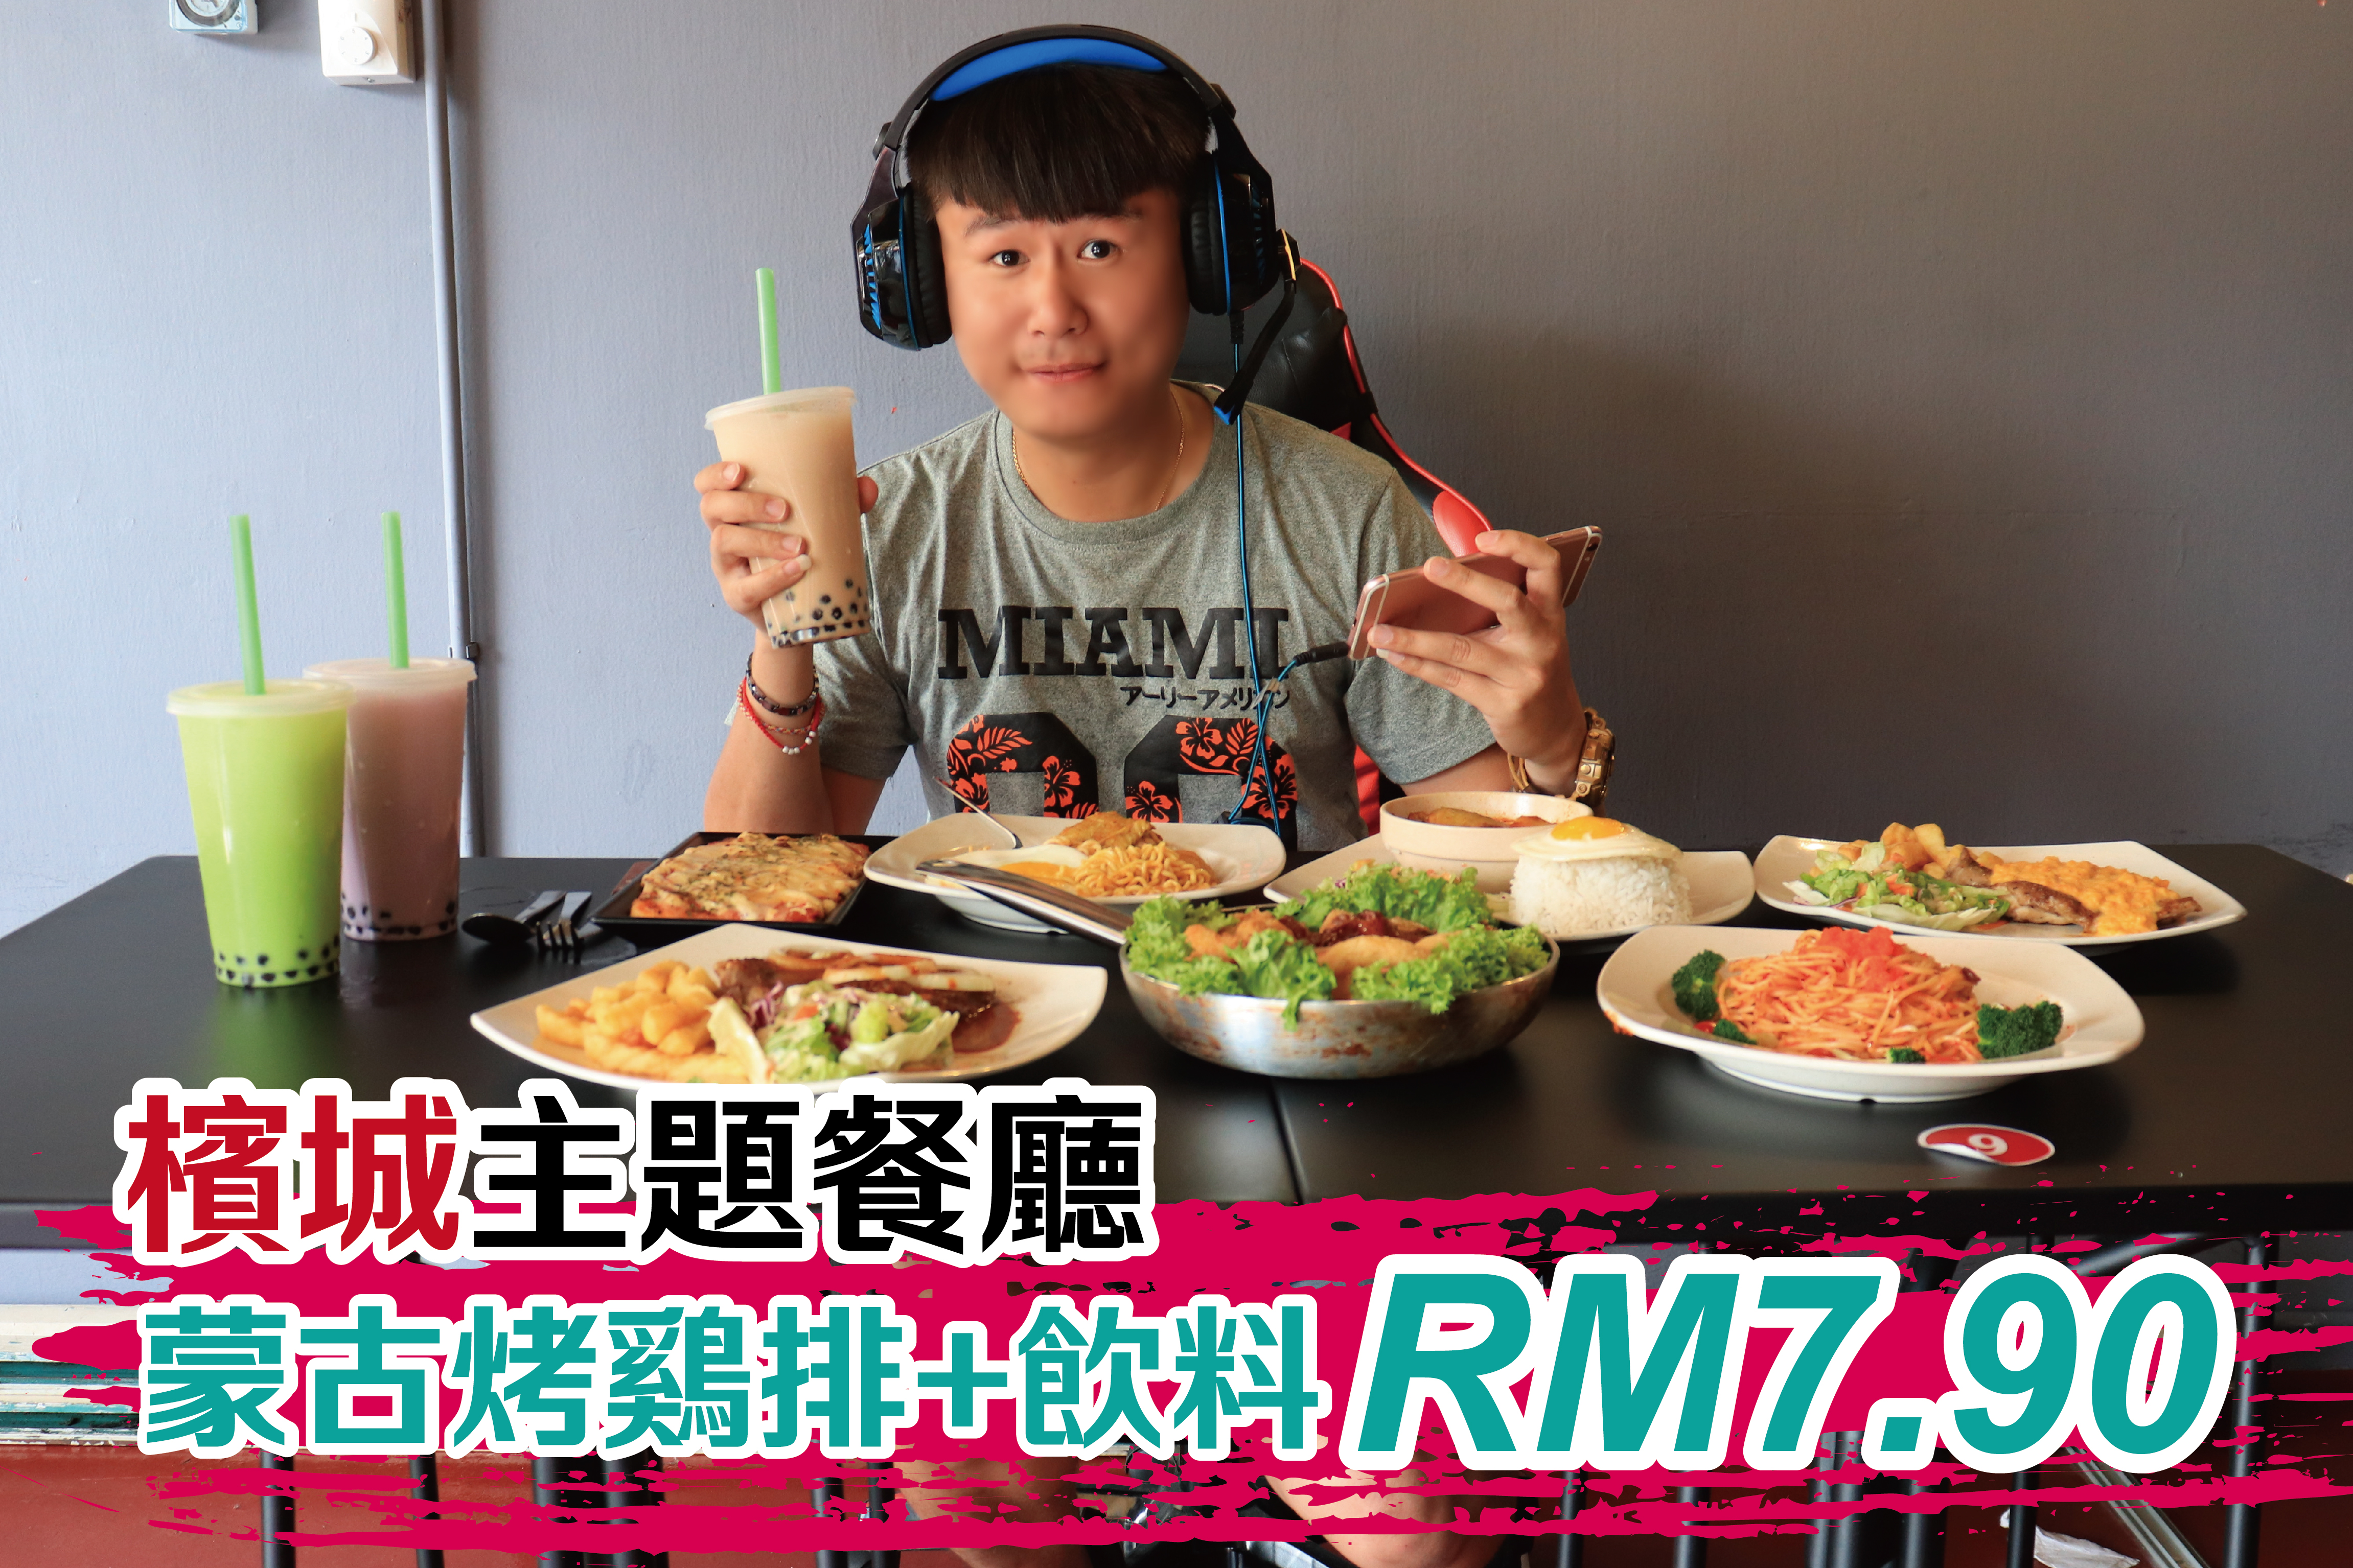 王者荣耀主题餐厅，蒙古烤鸡扒+饮料=RM7.90